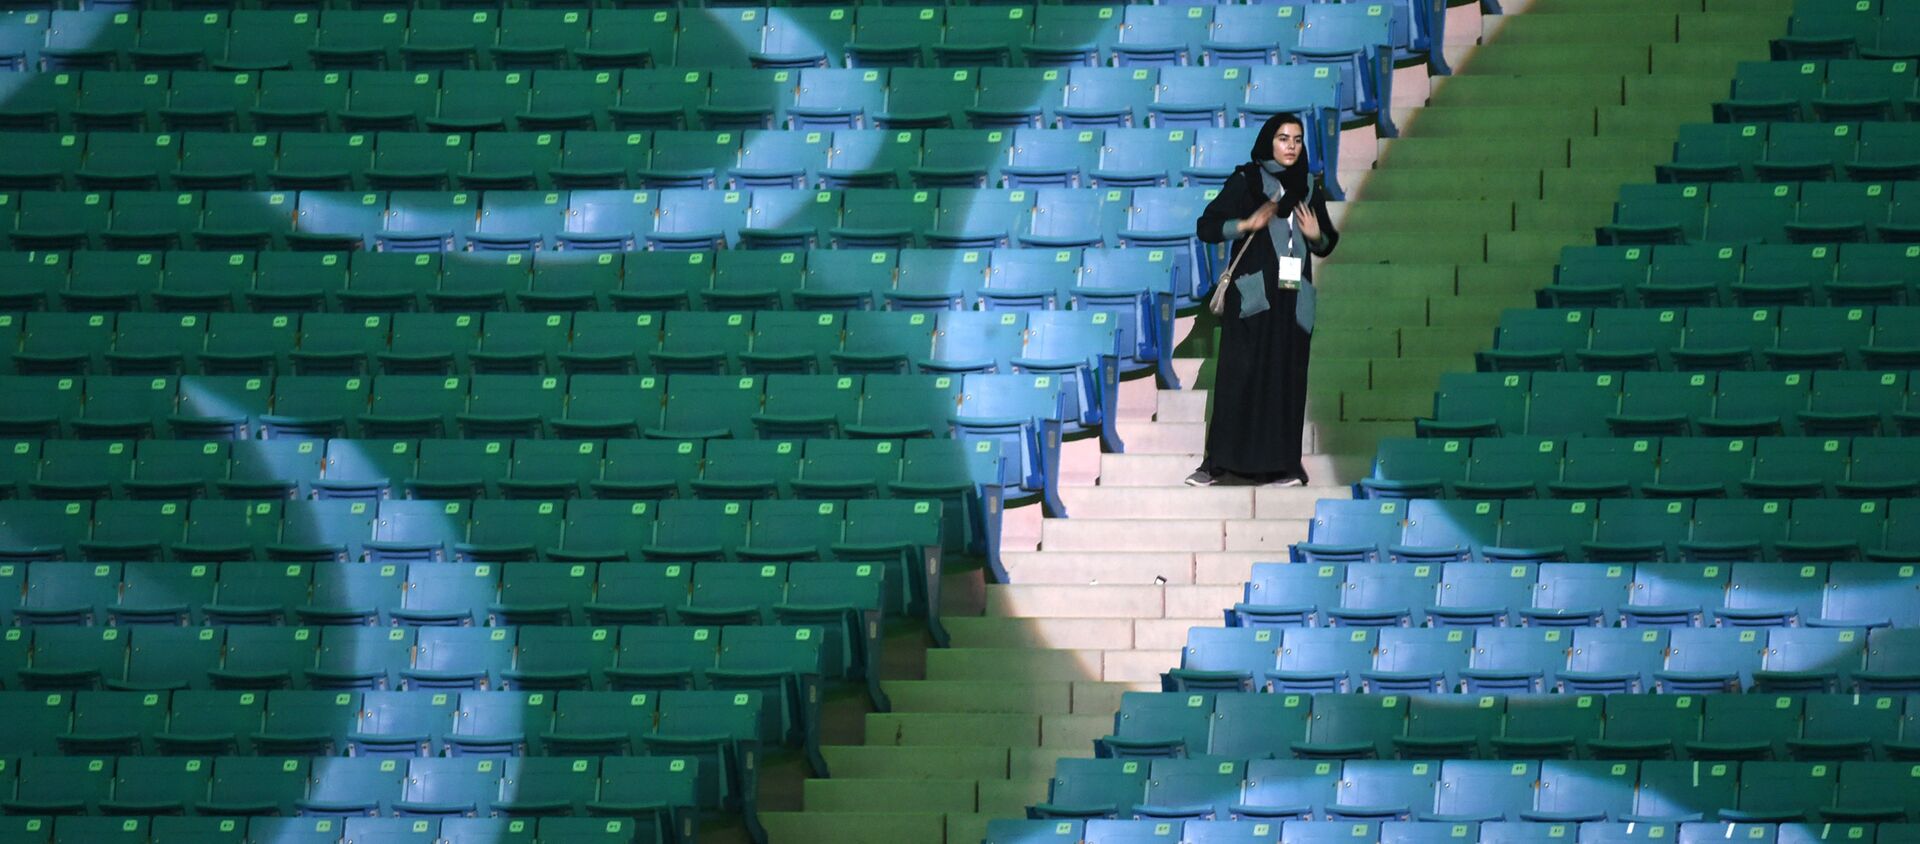 السعودية تسمح للمرأة ولأول مرة بدخول استاد رياضي في اليوم الوطني، الرياض - سبوتنيك عربي, 1920, 11.10.2021